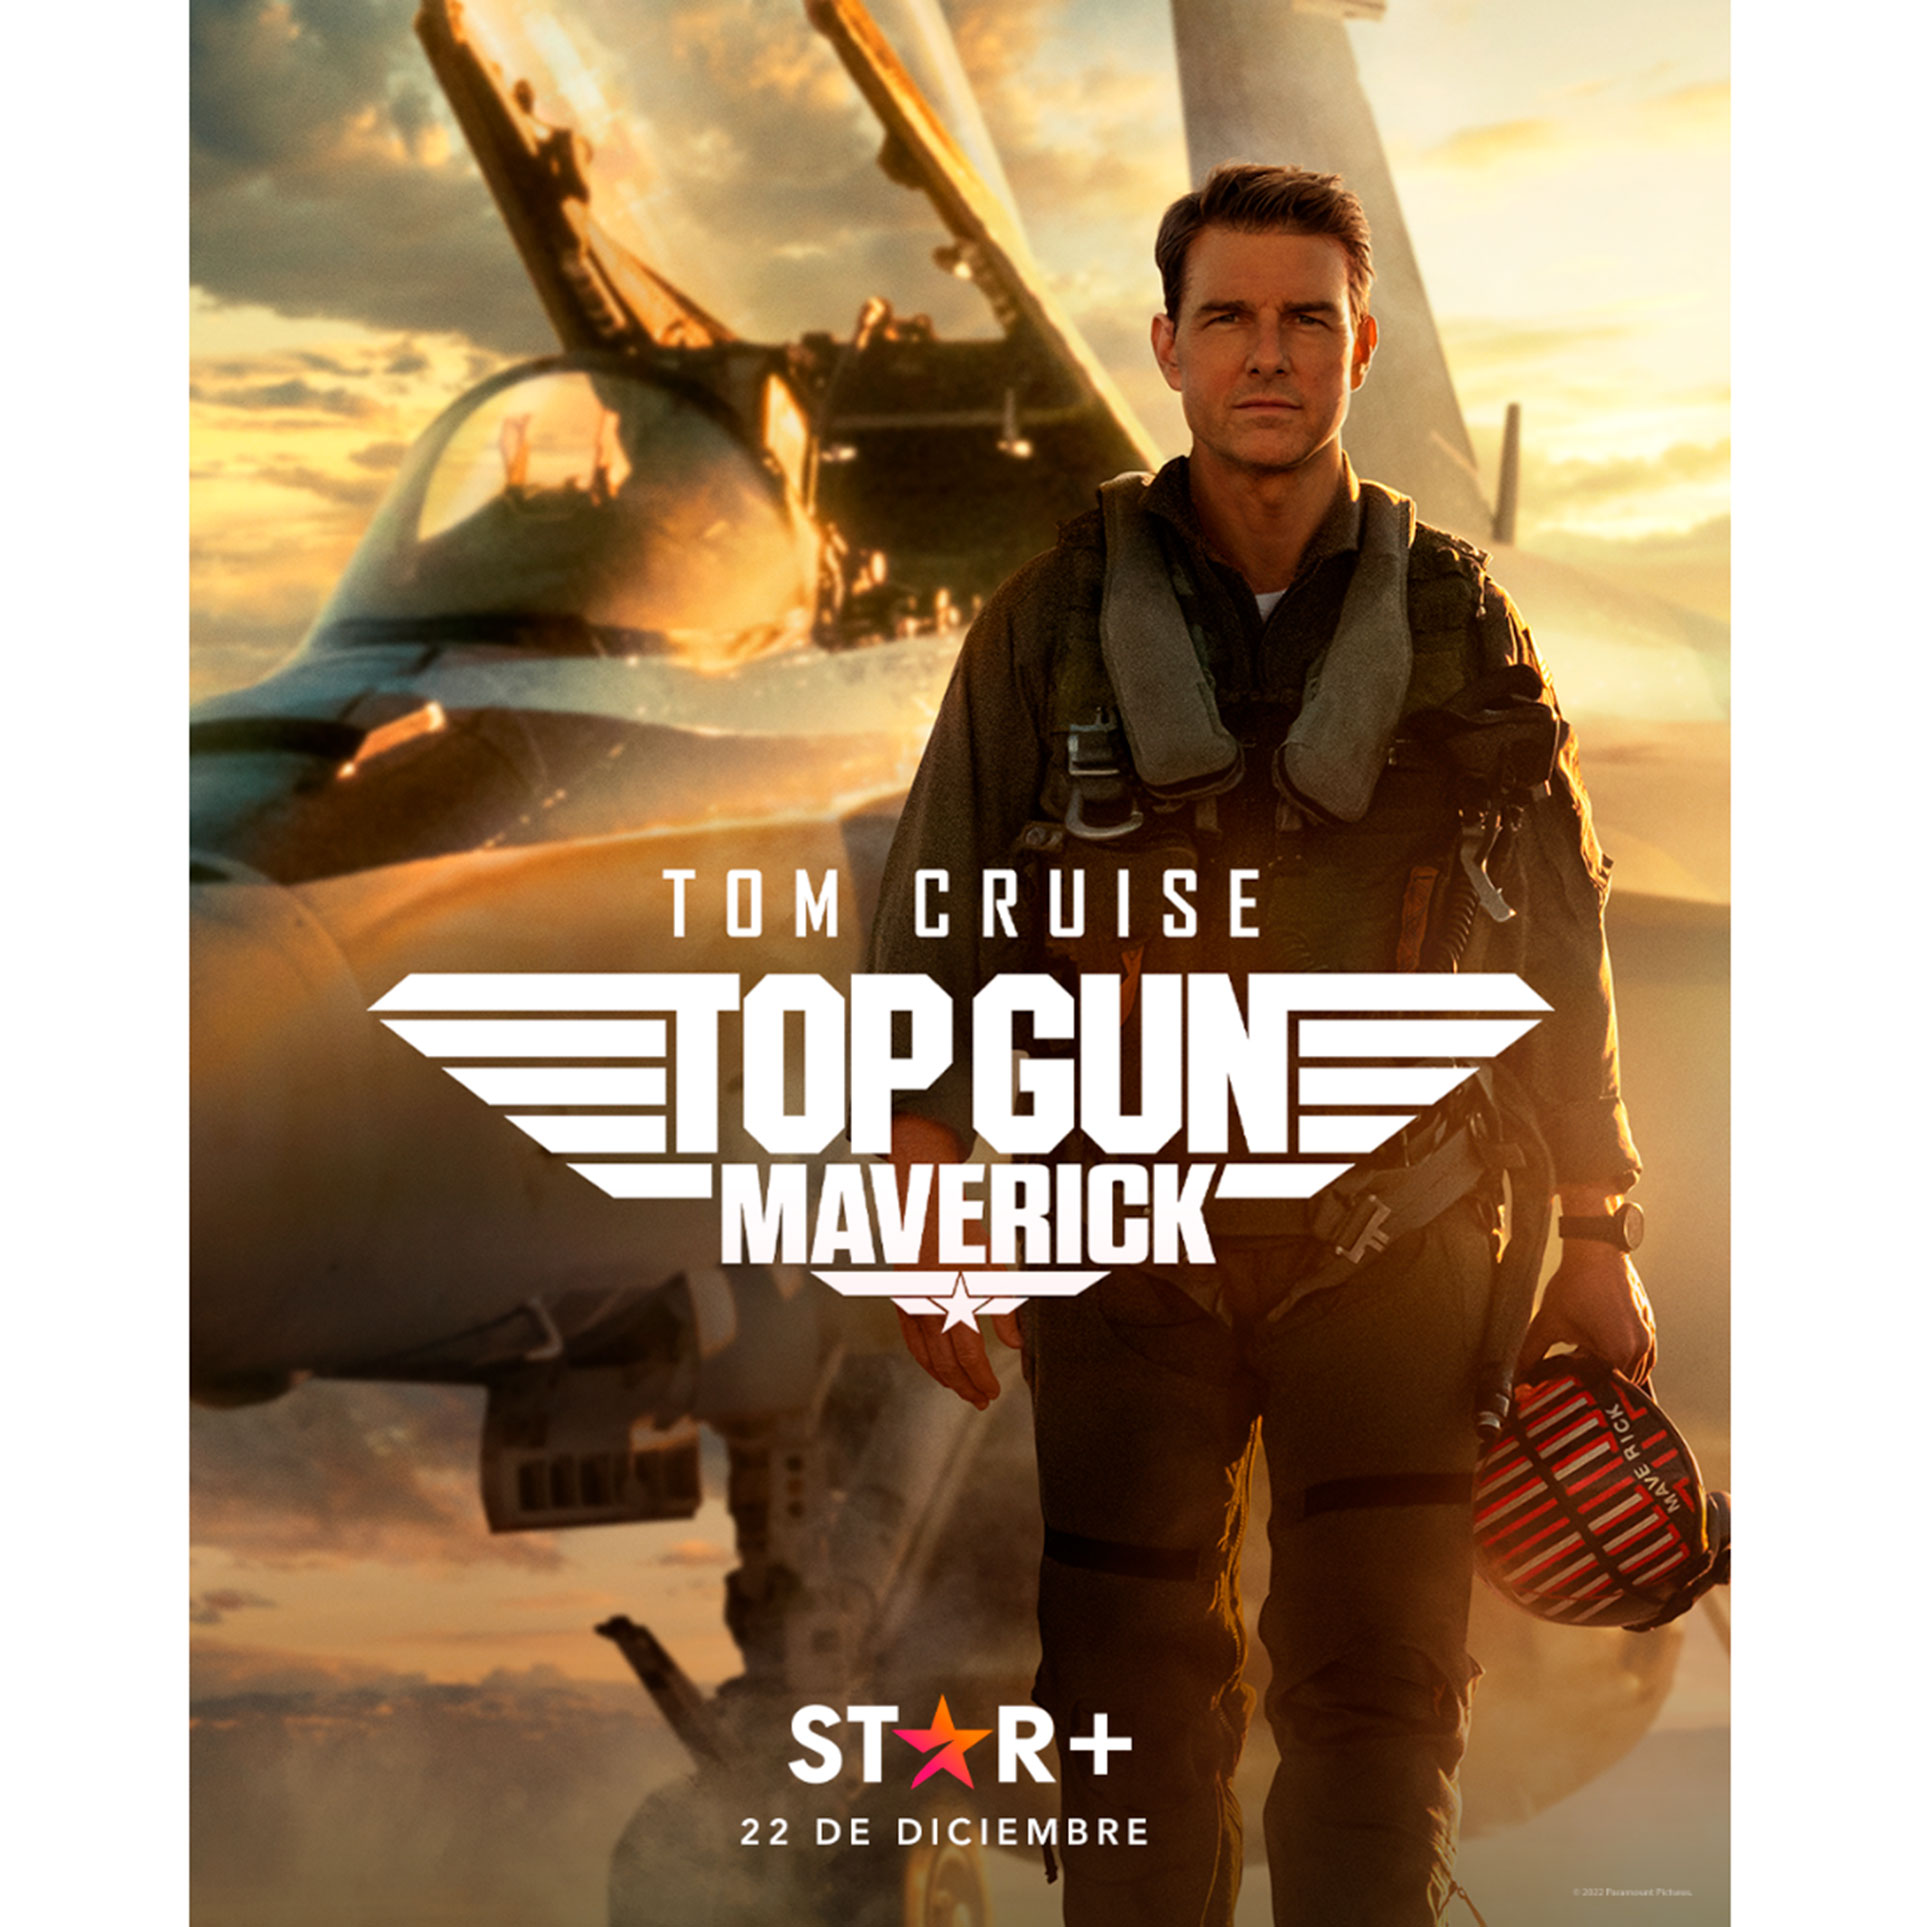 La exitosa secuela de Top Gun llega a Star+